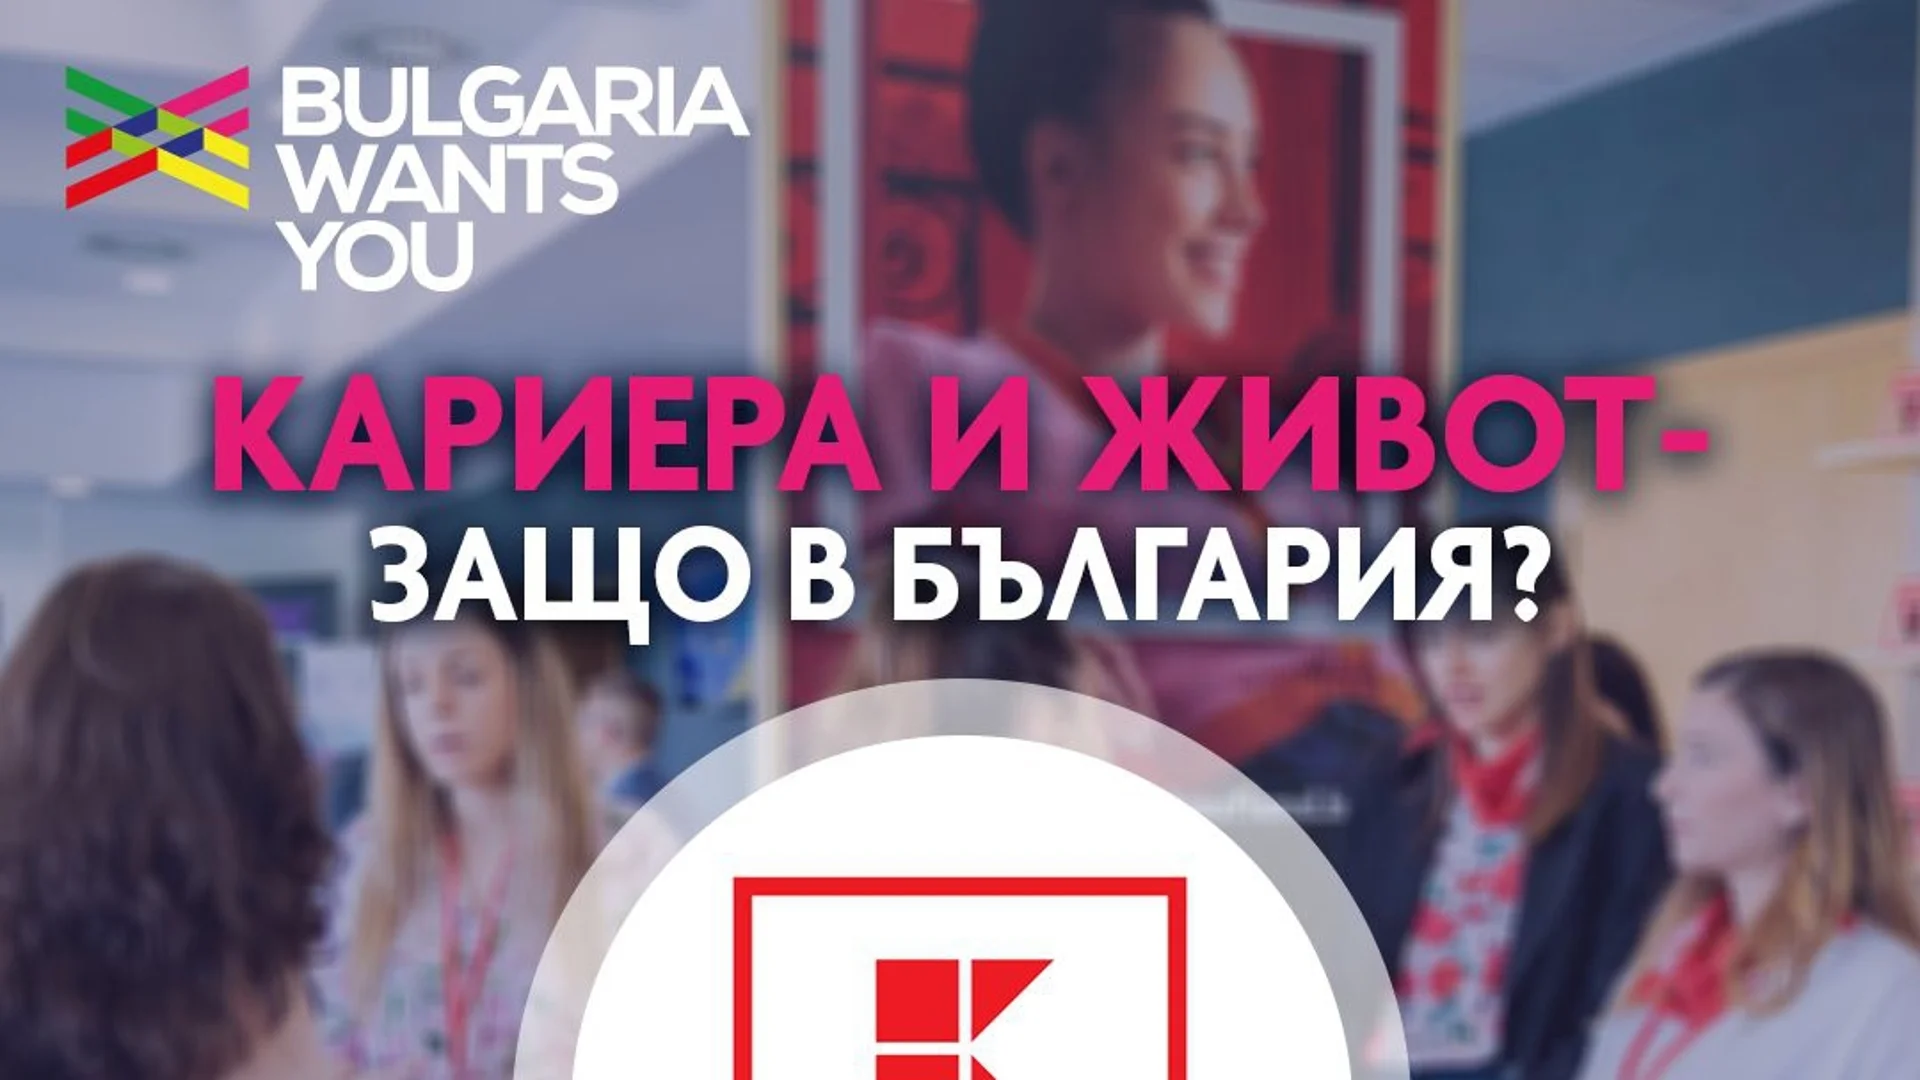 Kaufland: „Защо да изберем кариера в България?“